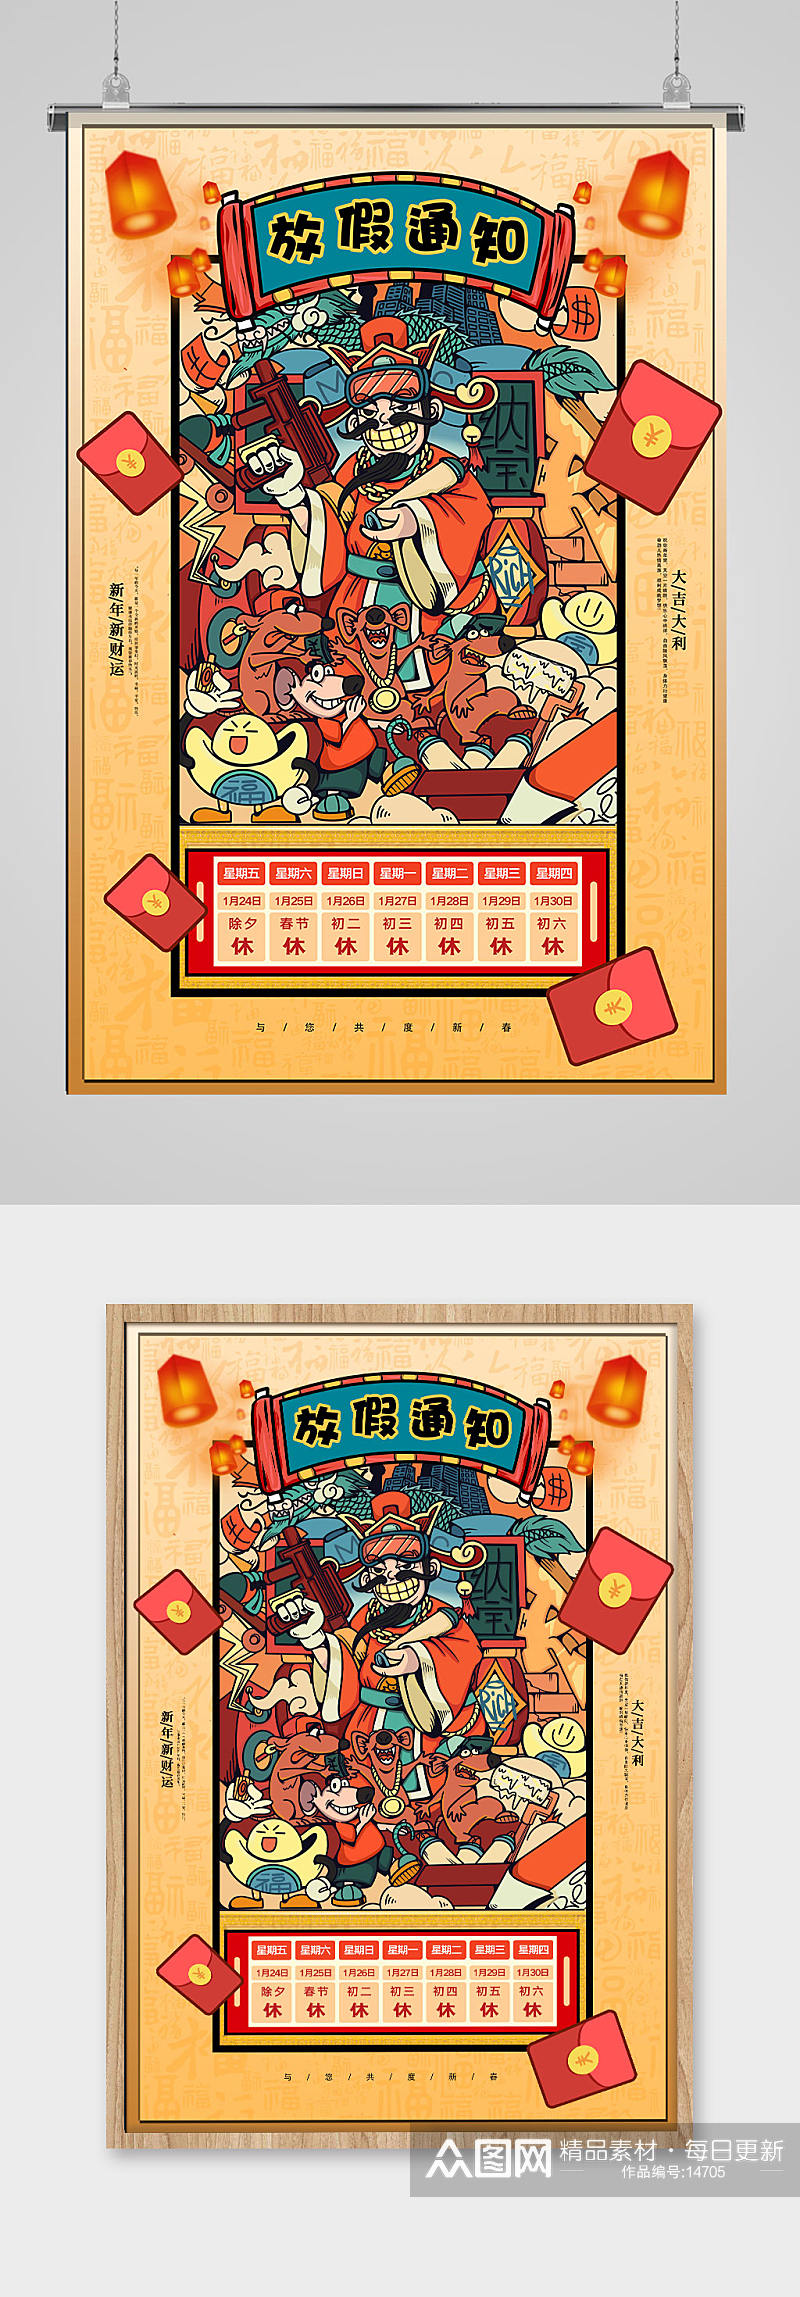 国潮财神春节放假通知海报设计素材